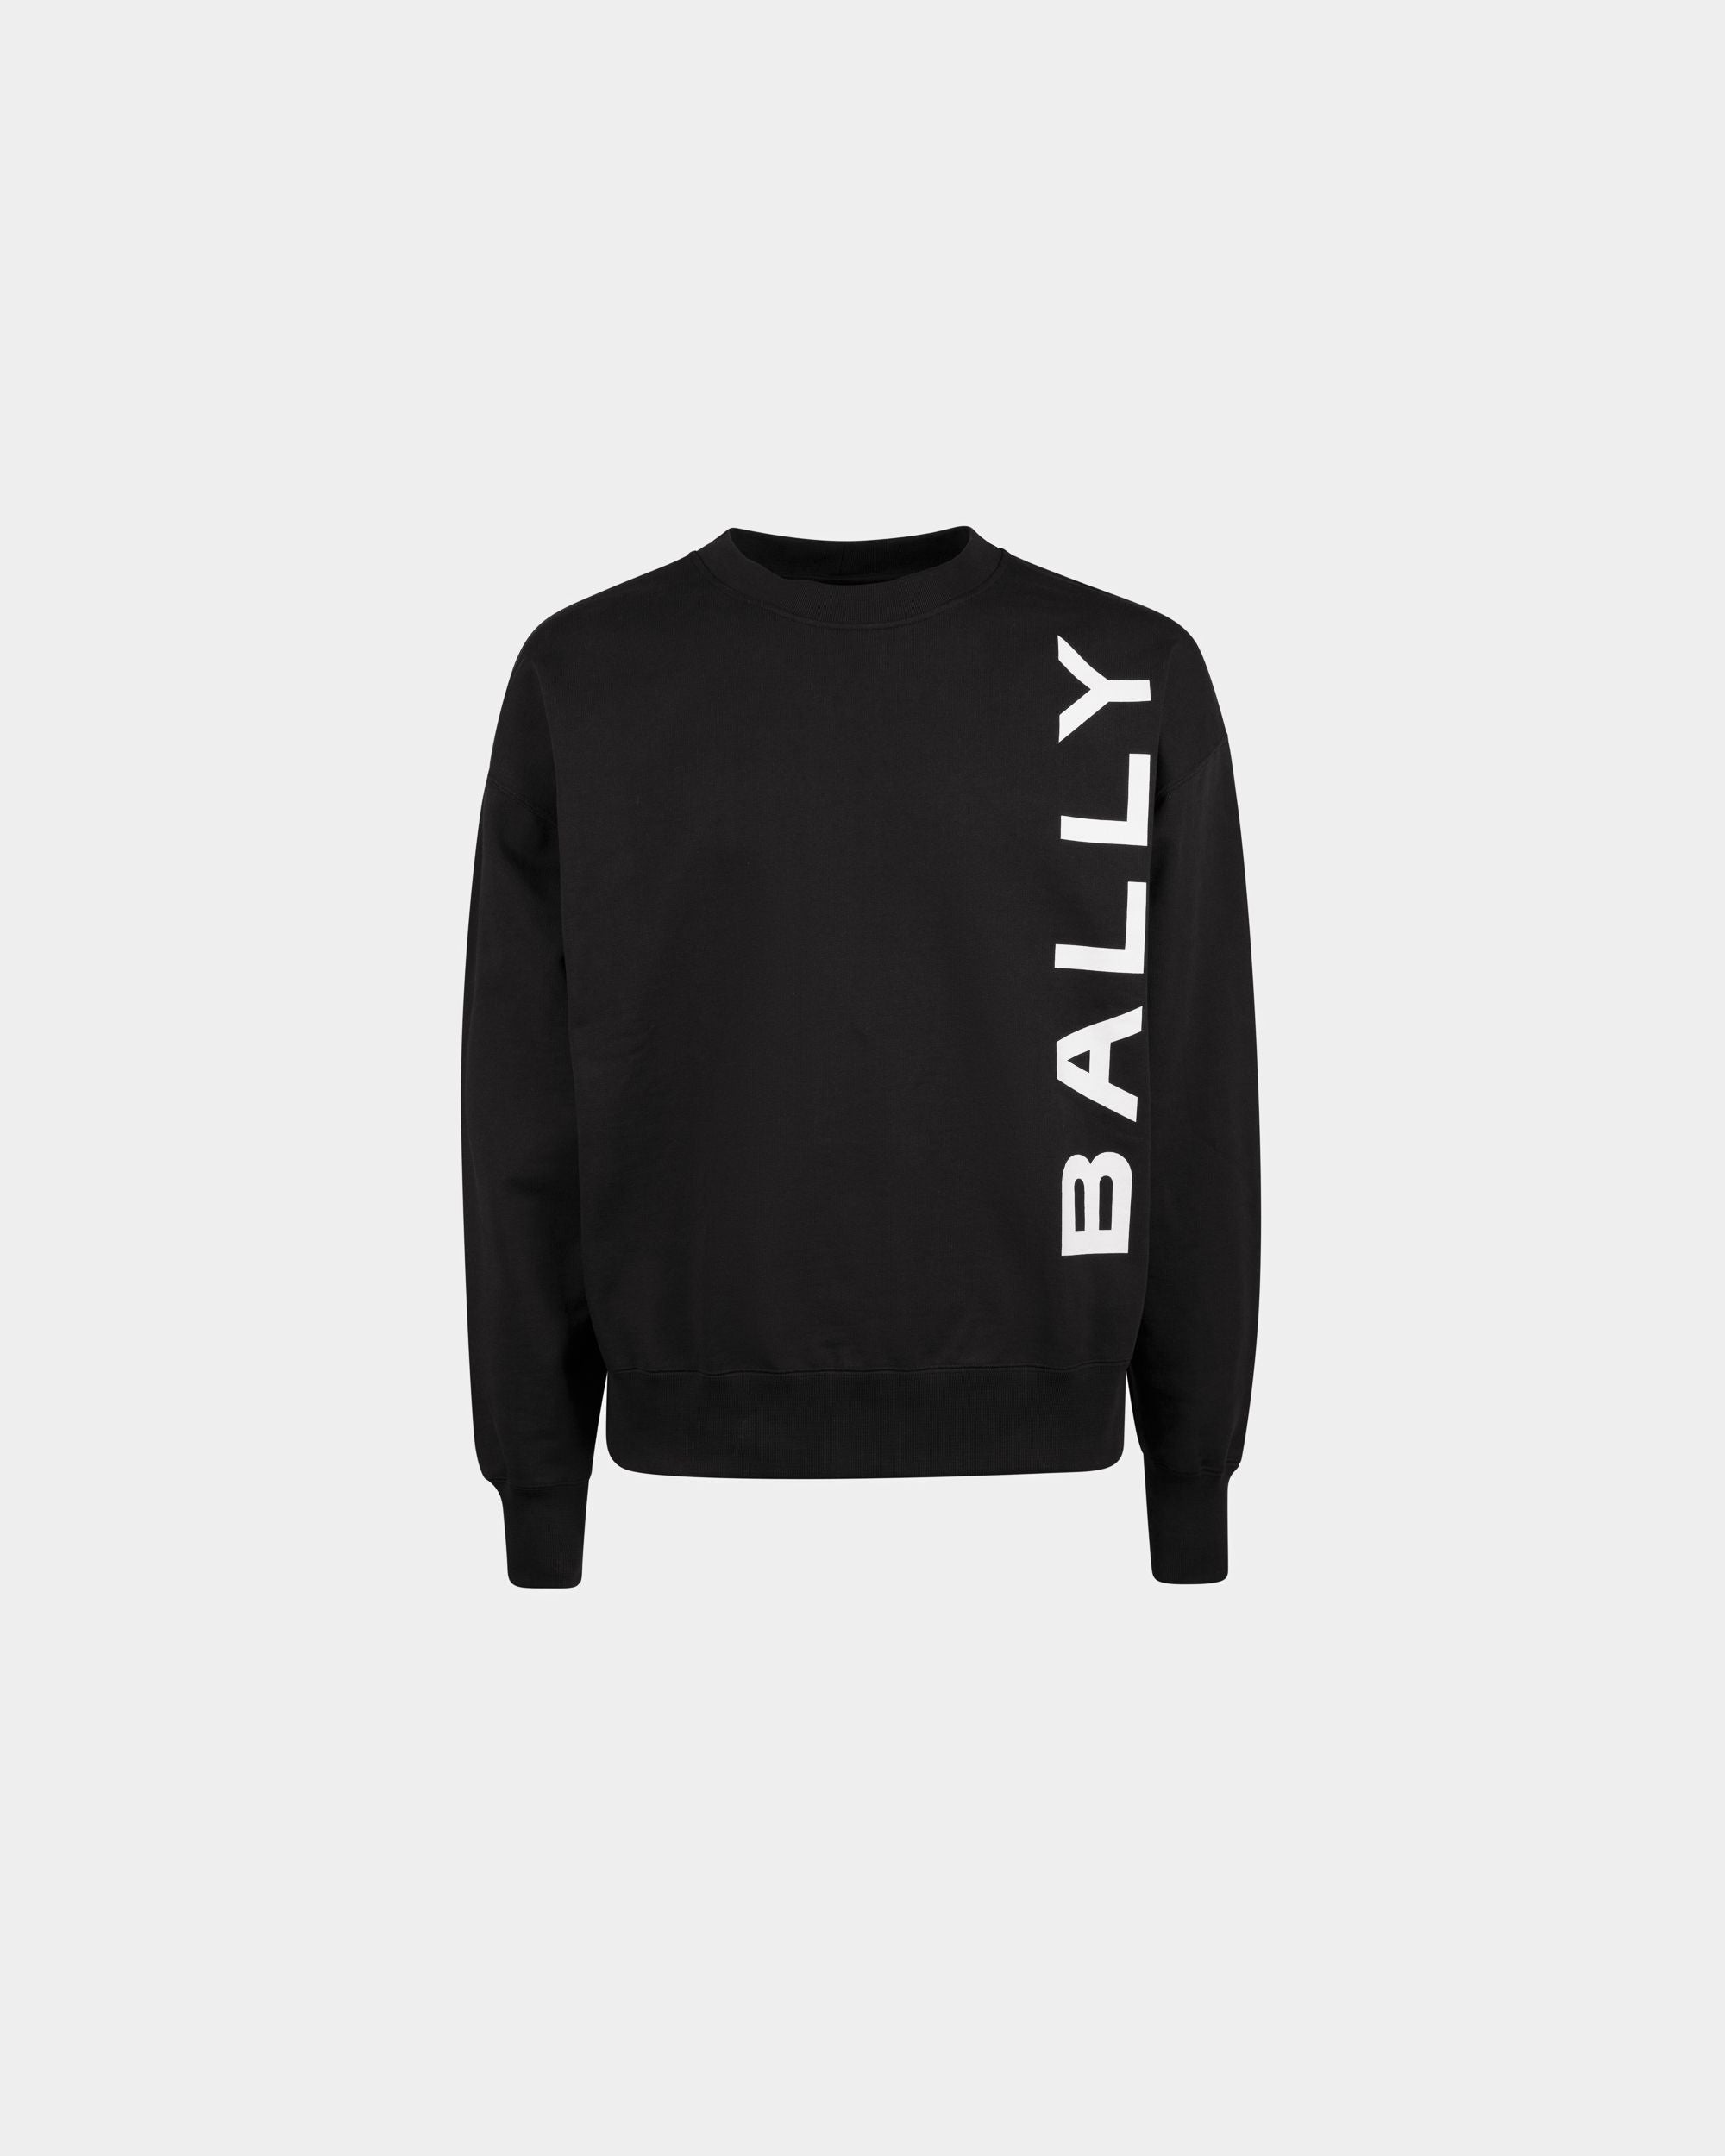 メンズ スウェットシャツ ブラック コットン | Bally | Still Life フロント